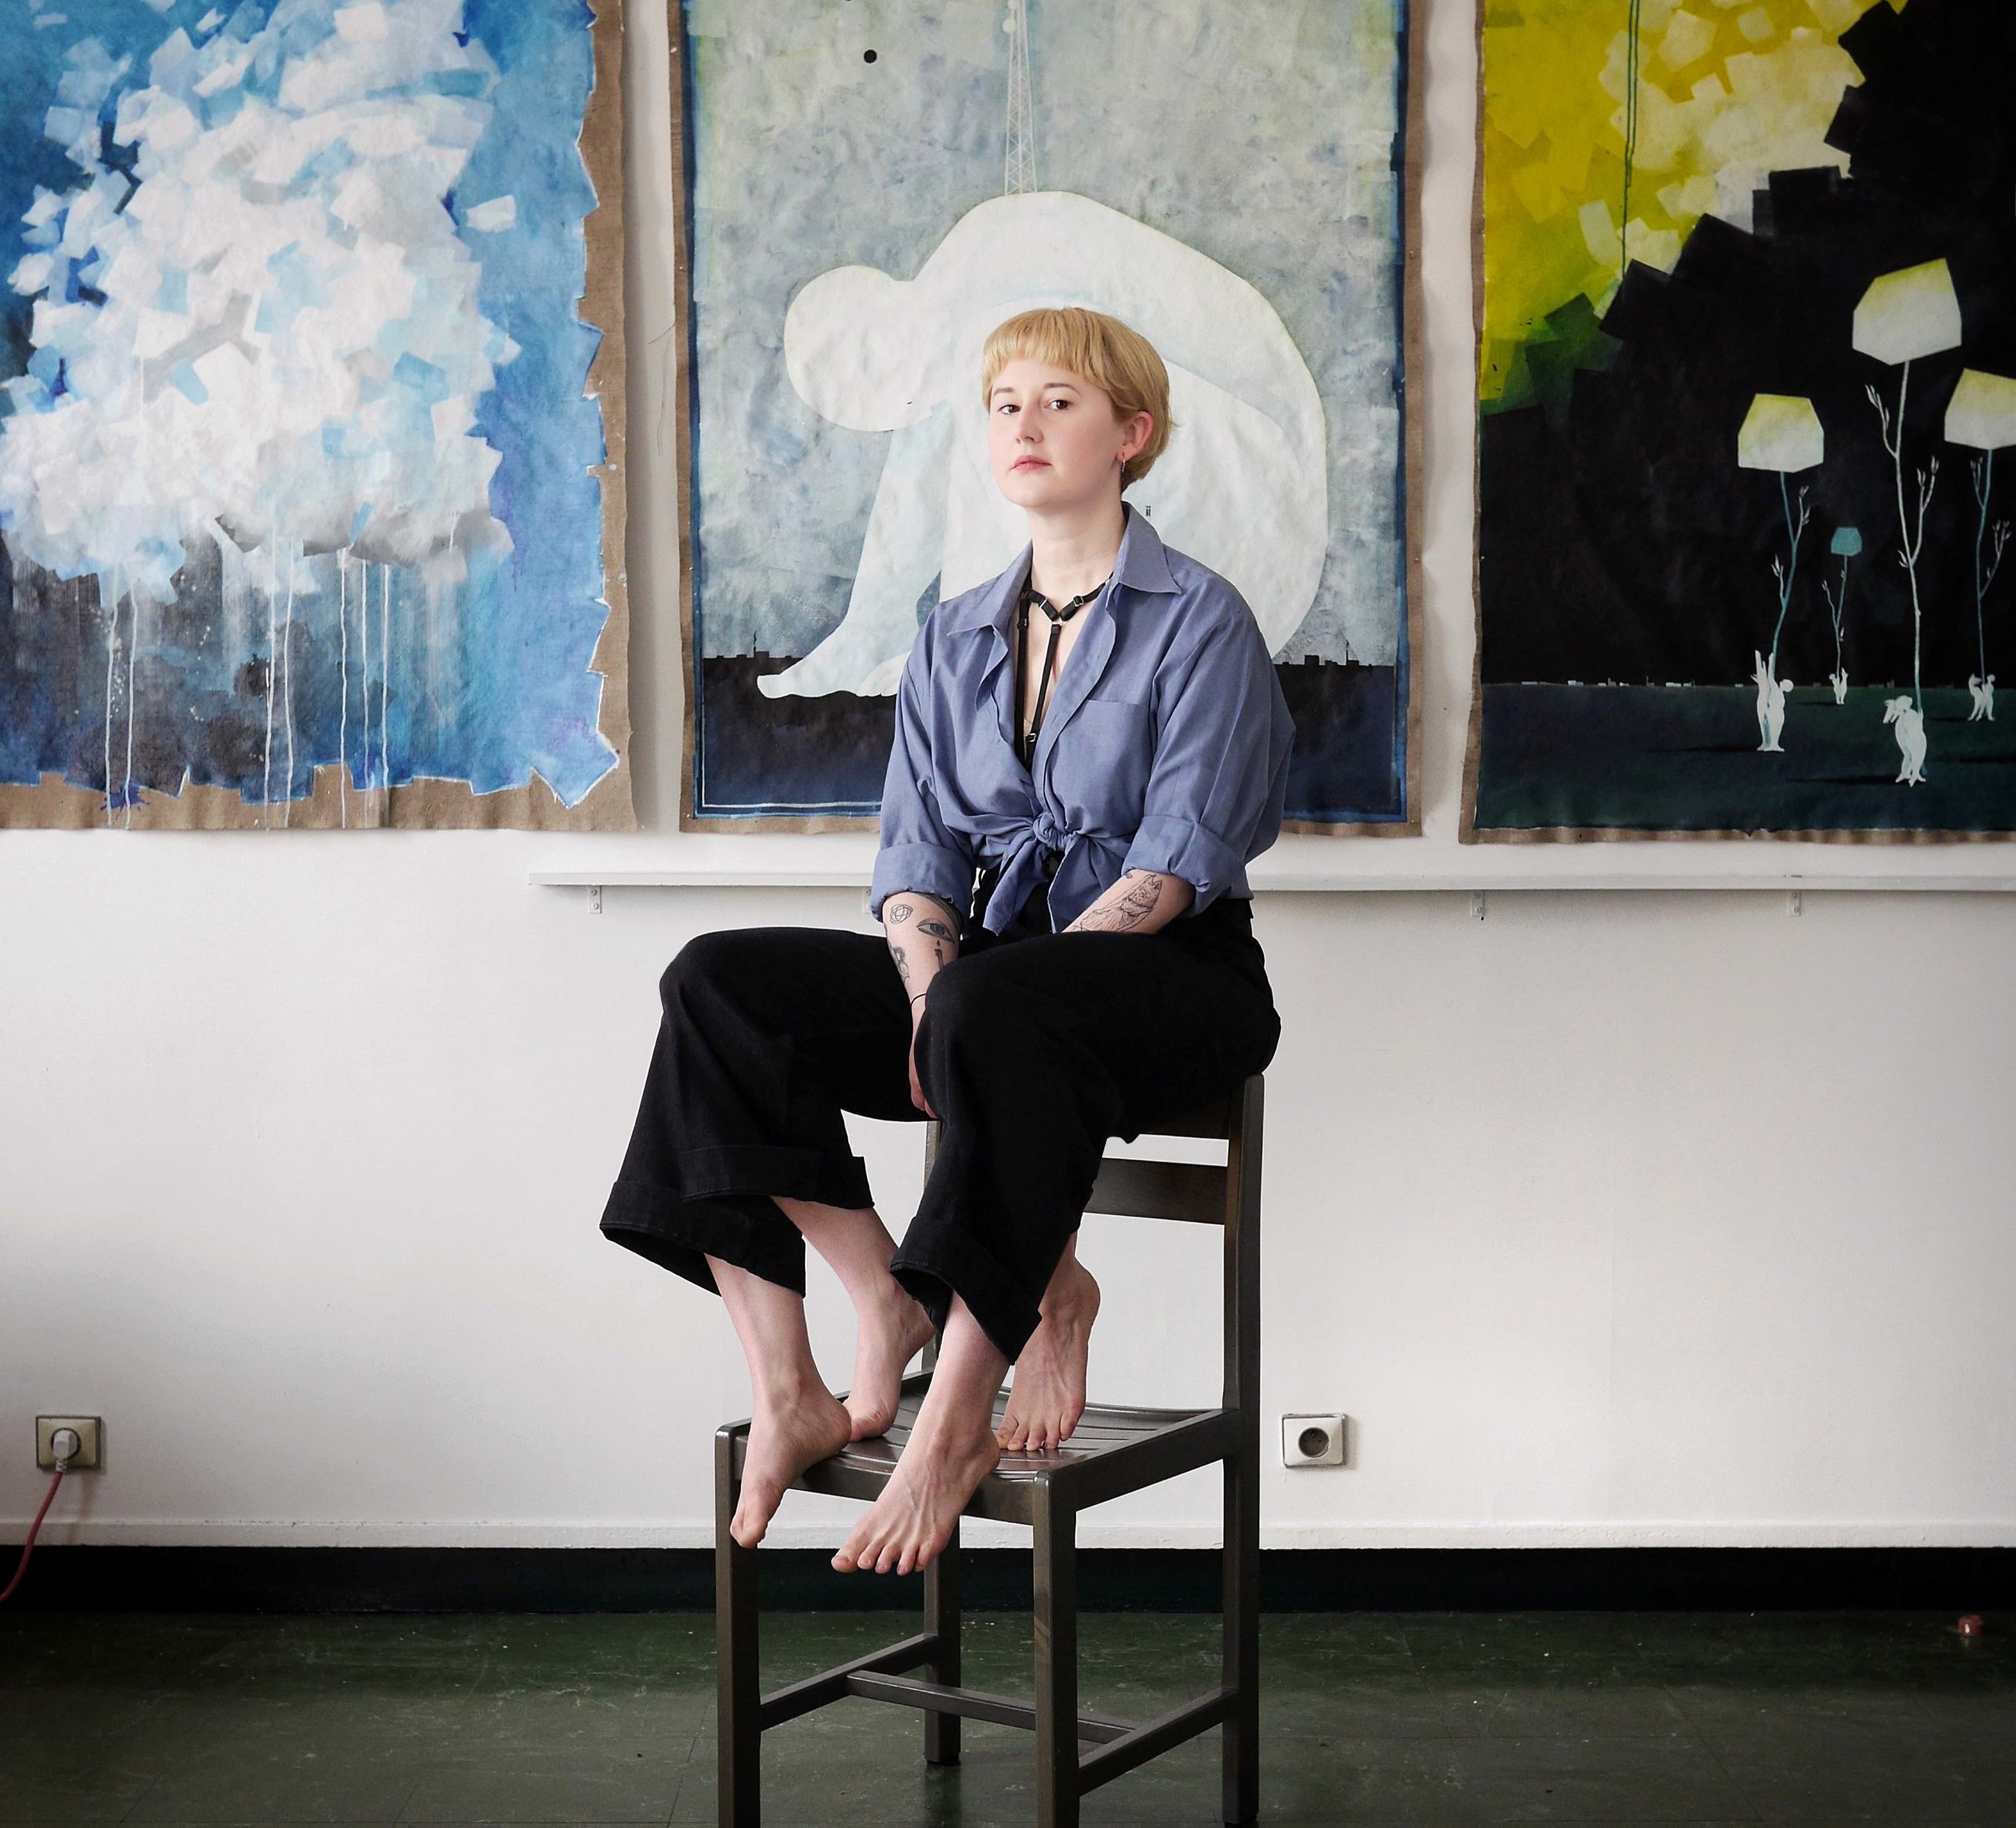 Selbstporträt der Künstlerin Anna Kohlweis mit vier Beinen, während sie vor modernen Malereien auf einem Hocker sitzt